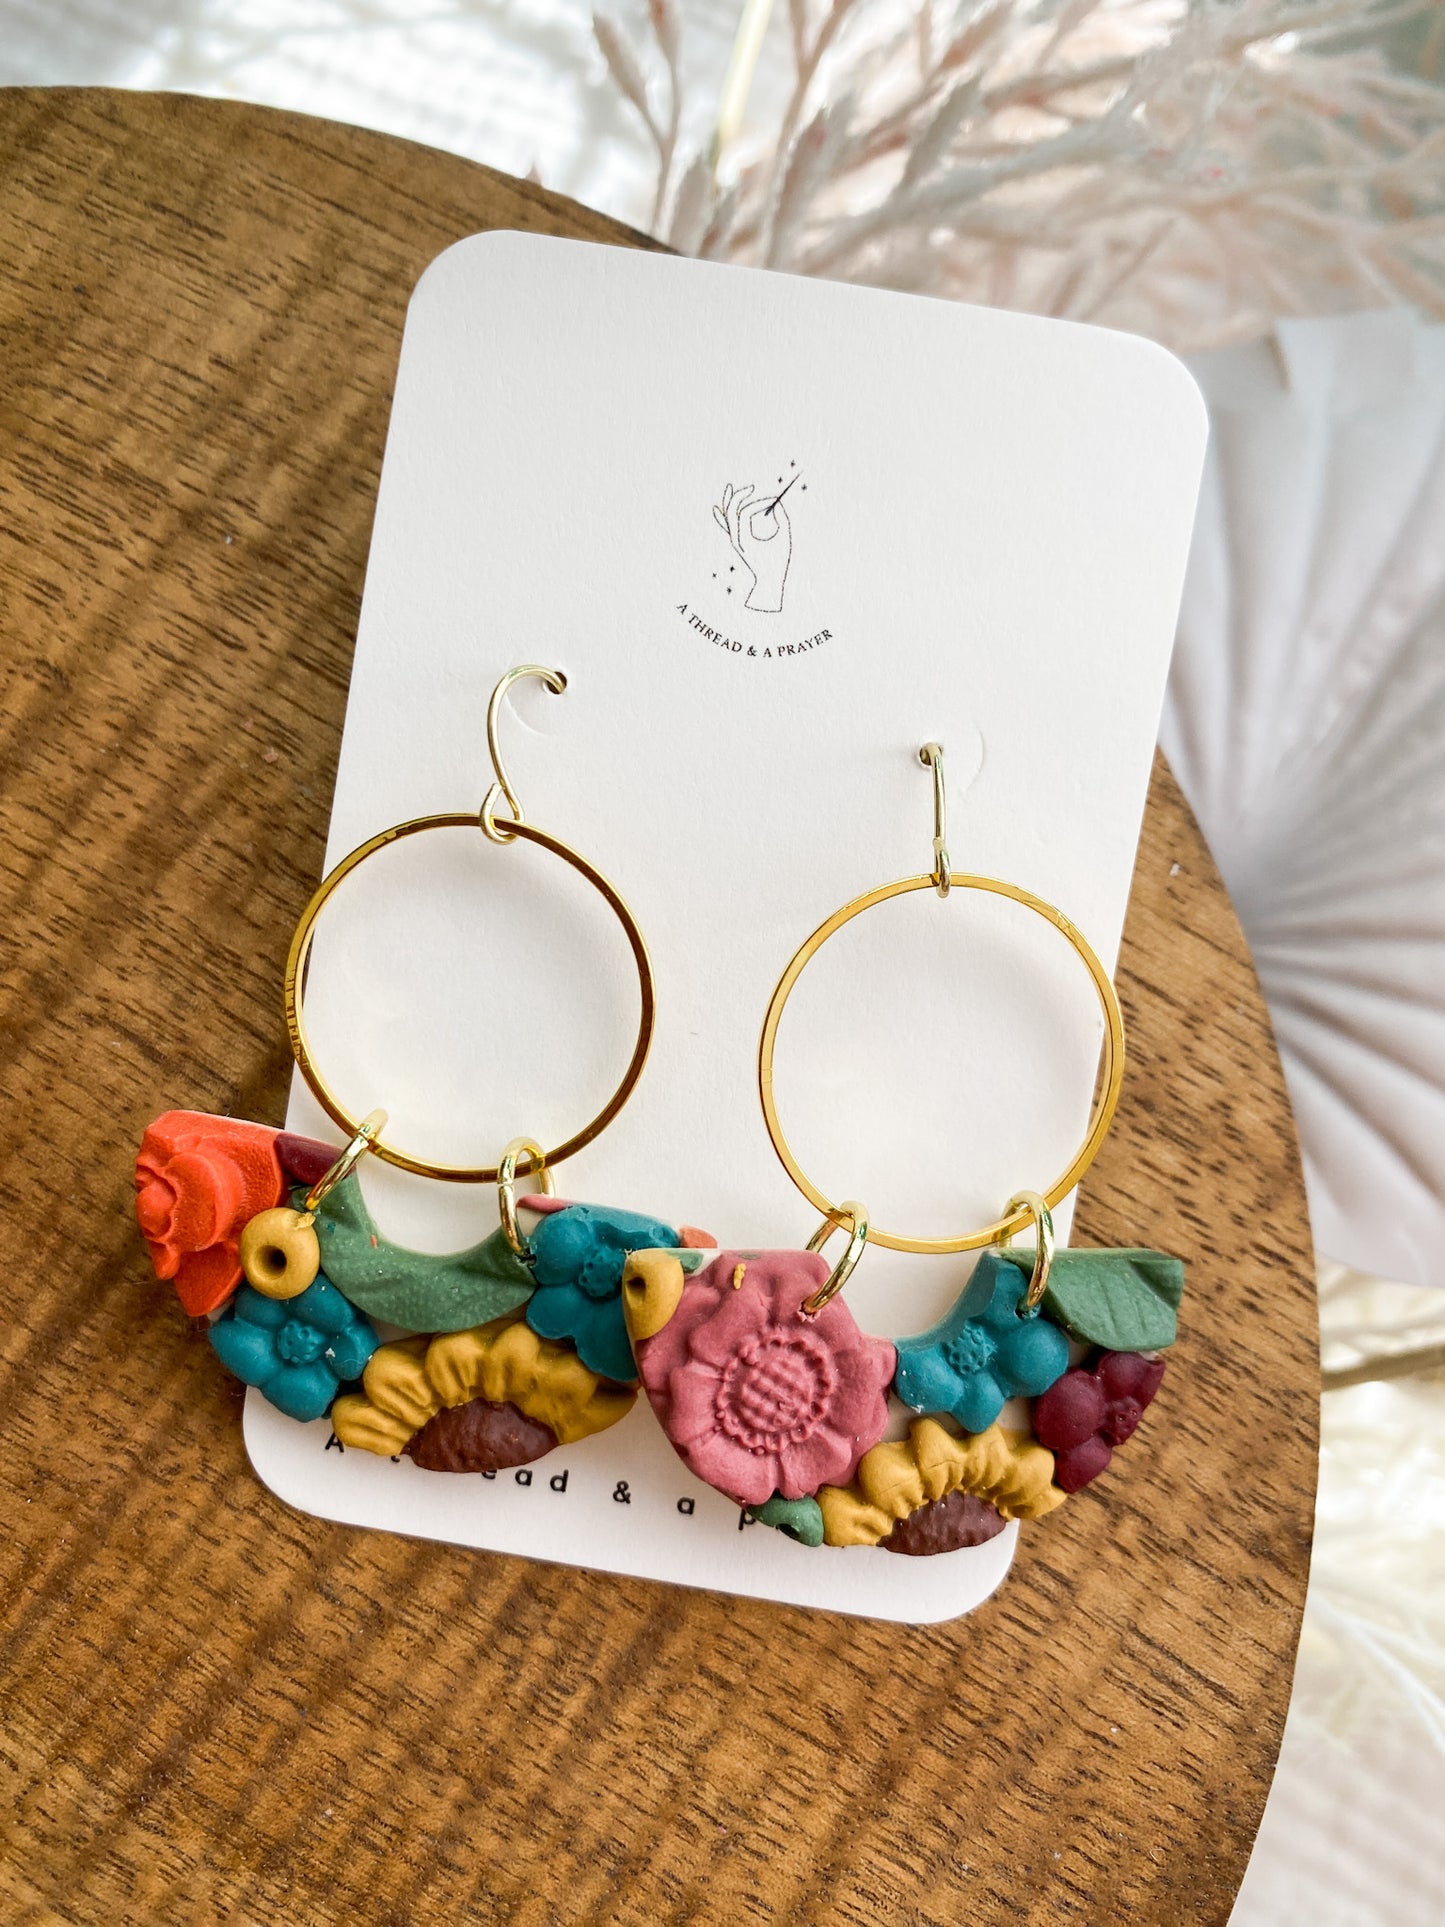 Spring Floral Earrings Style 3 | Flower Garden Earrings | Dangle Clay Earrings